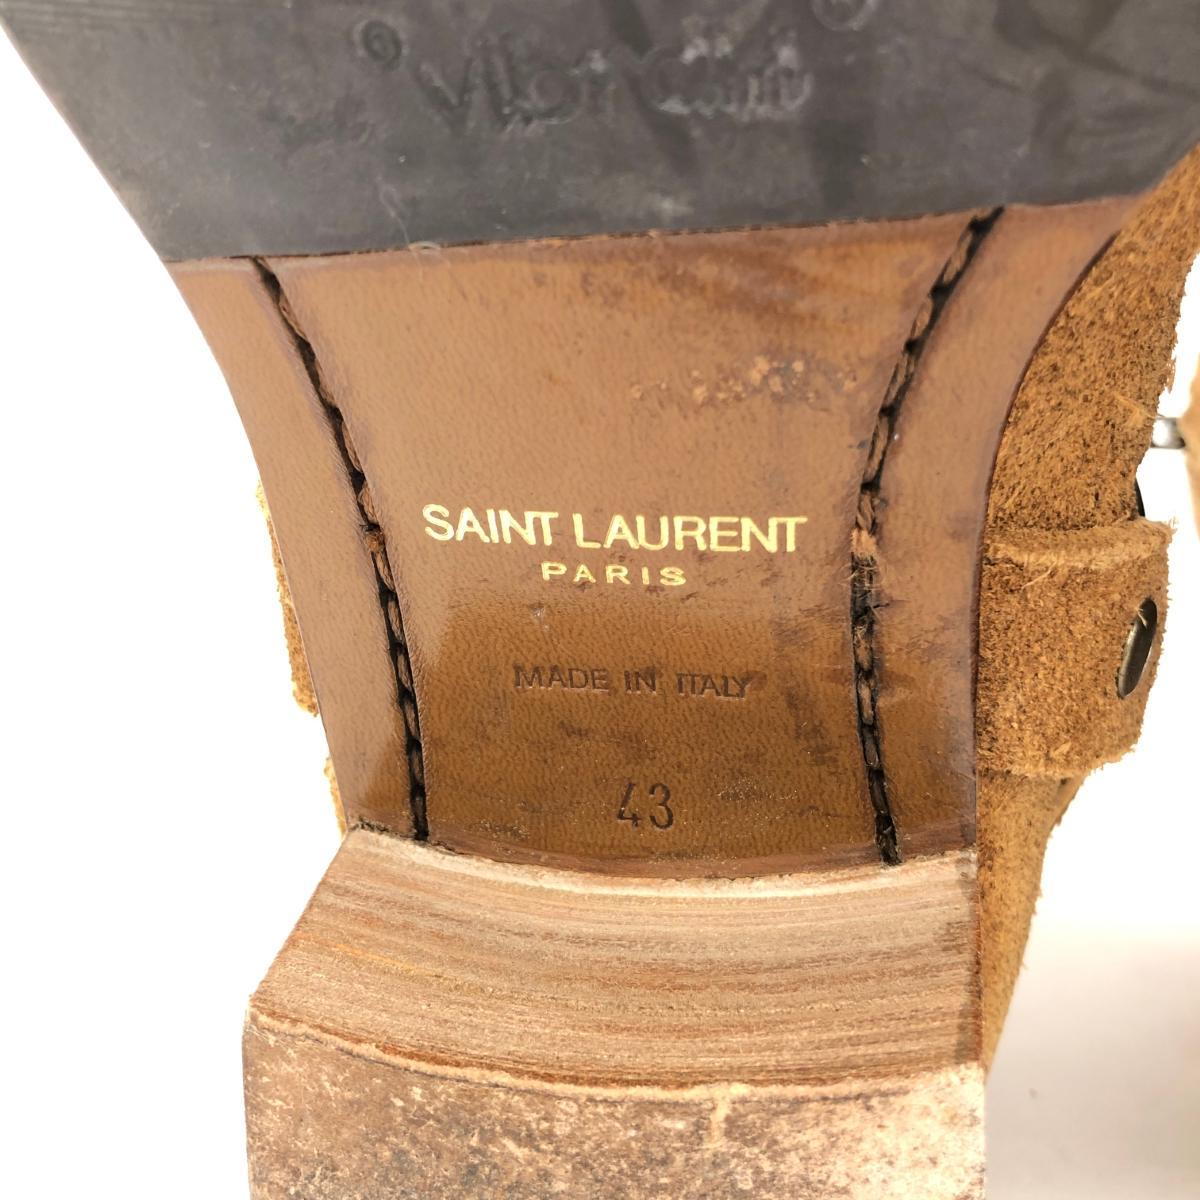 ◆SAINT LAURENT PARIS サンローランパリ ワイアットハーネスリングブーツ サイズ43◆ ブラウン スエード メンズ 靴 シューズ boots_画像6